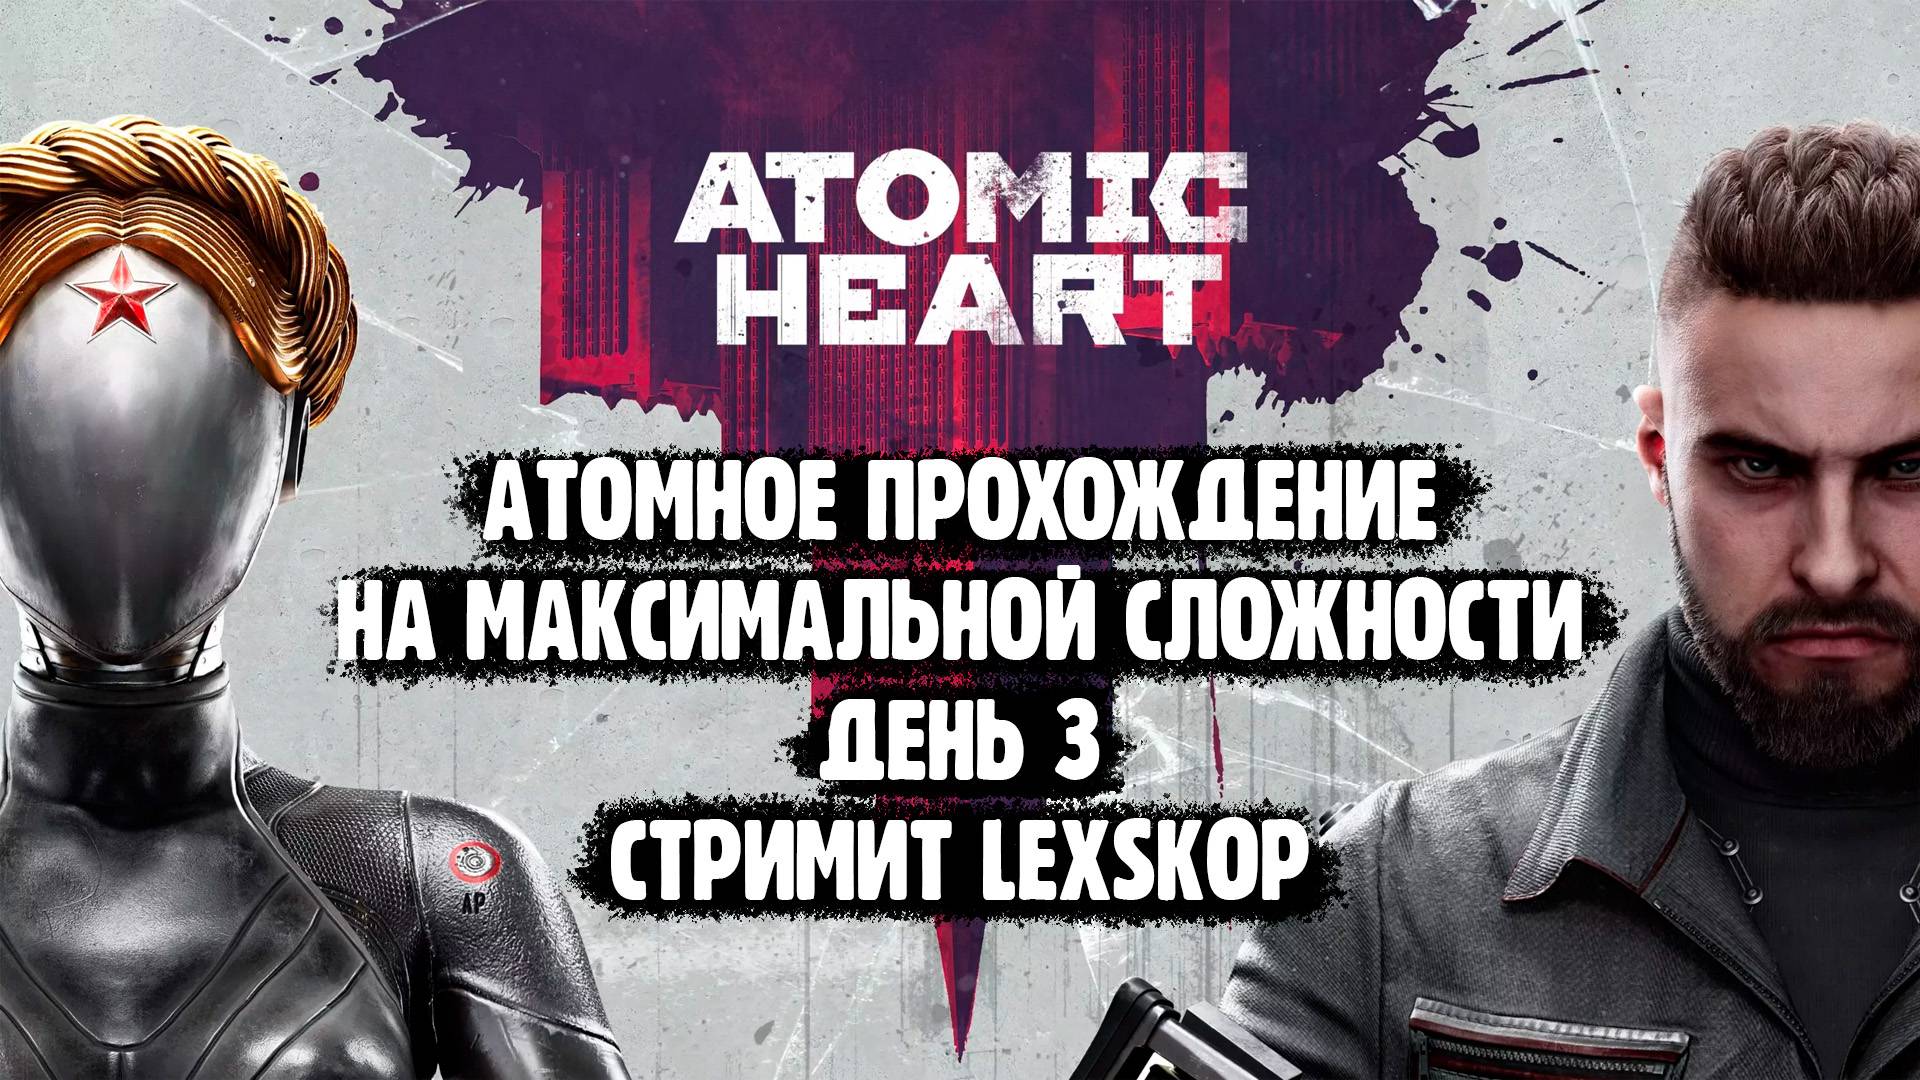 Atomic Heart | День 3 | Максимальная сложность | Атомное прохождение